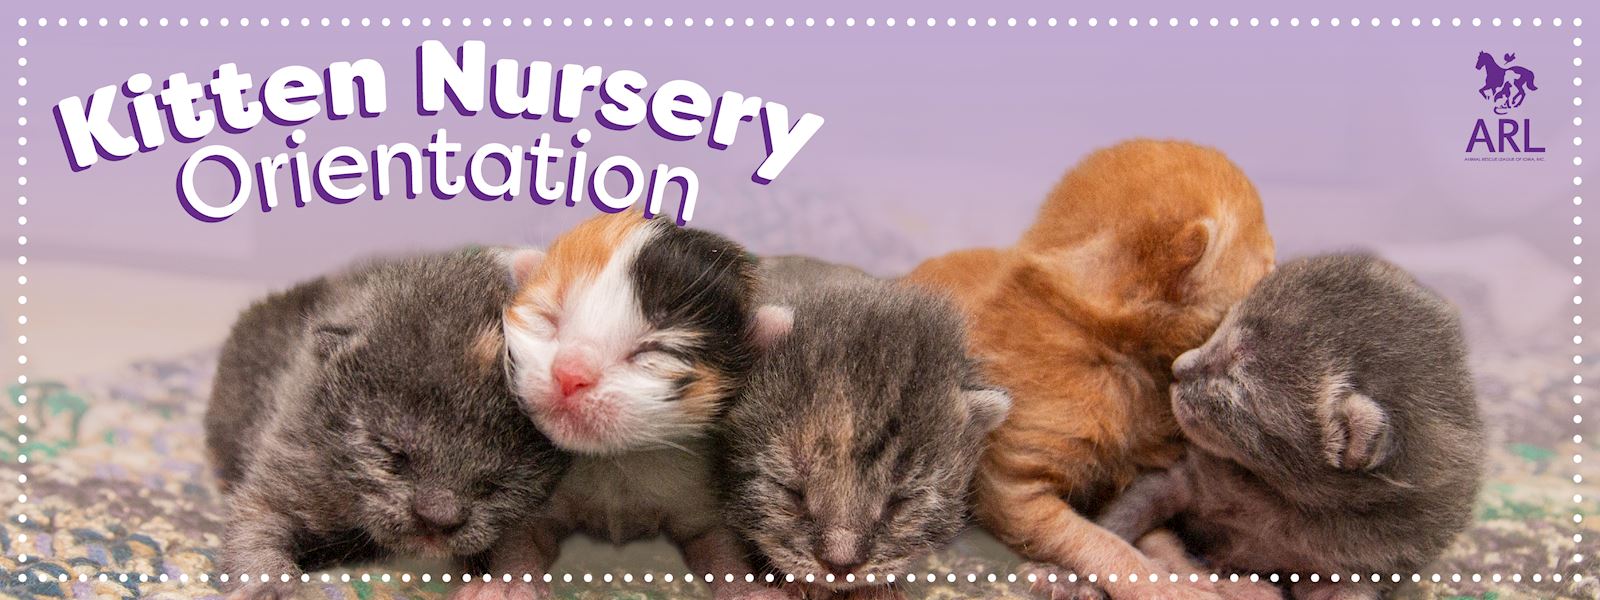 Kitten Nursery Orientation